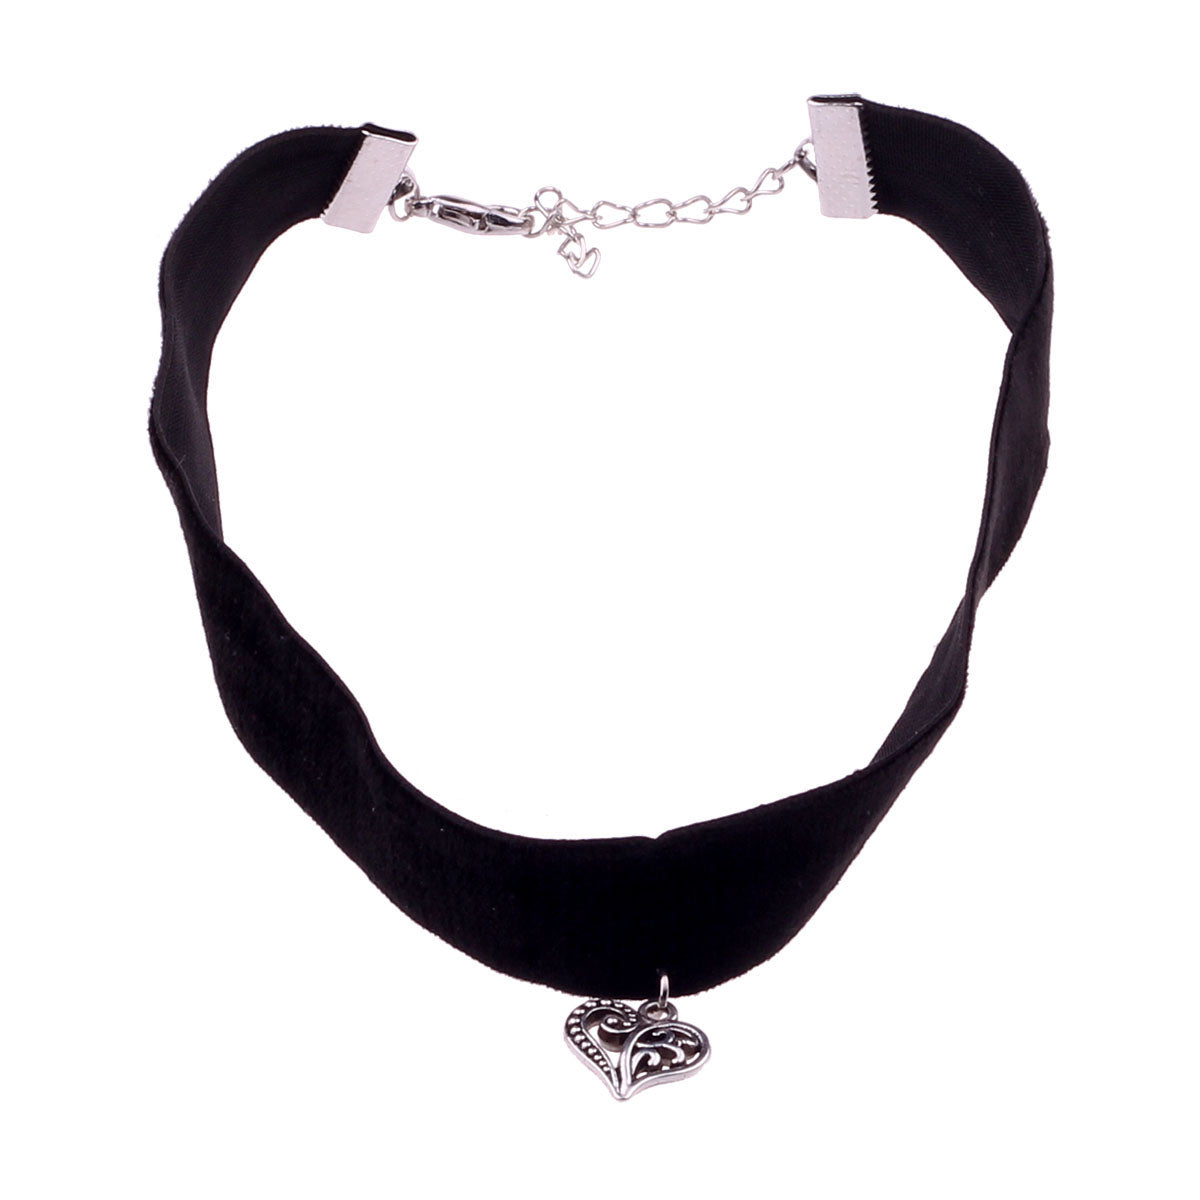 Velvet choker necklace with heart pendant